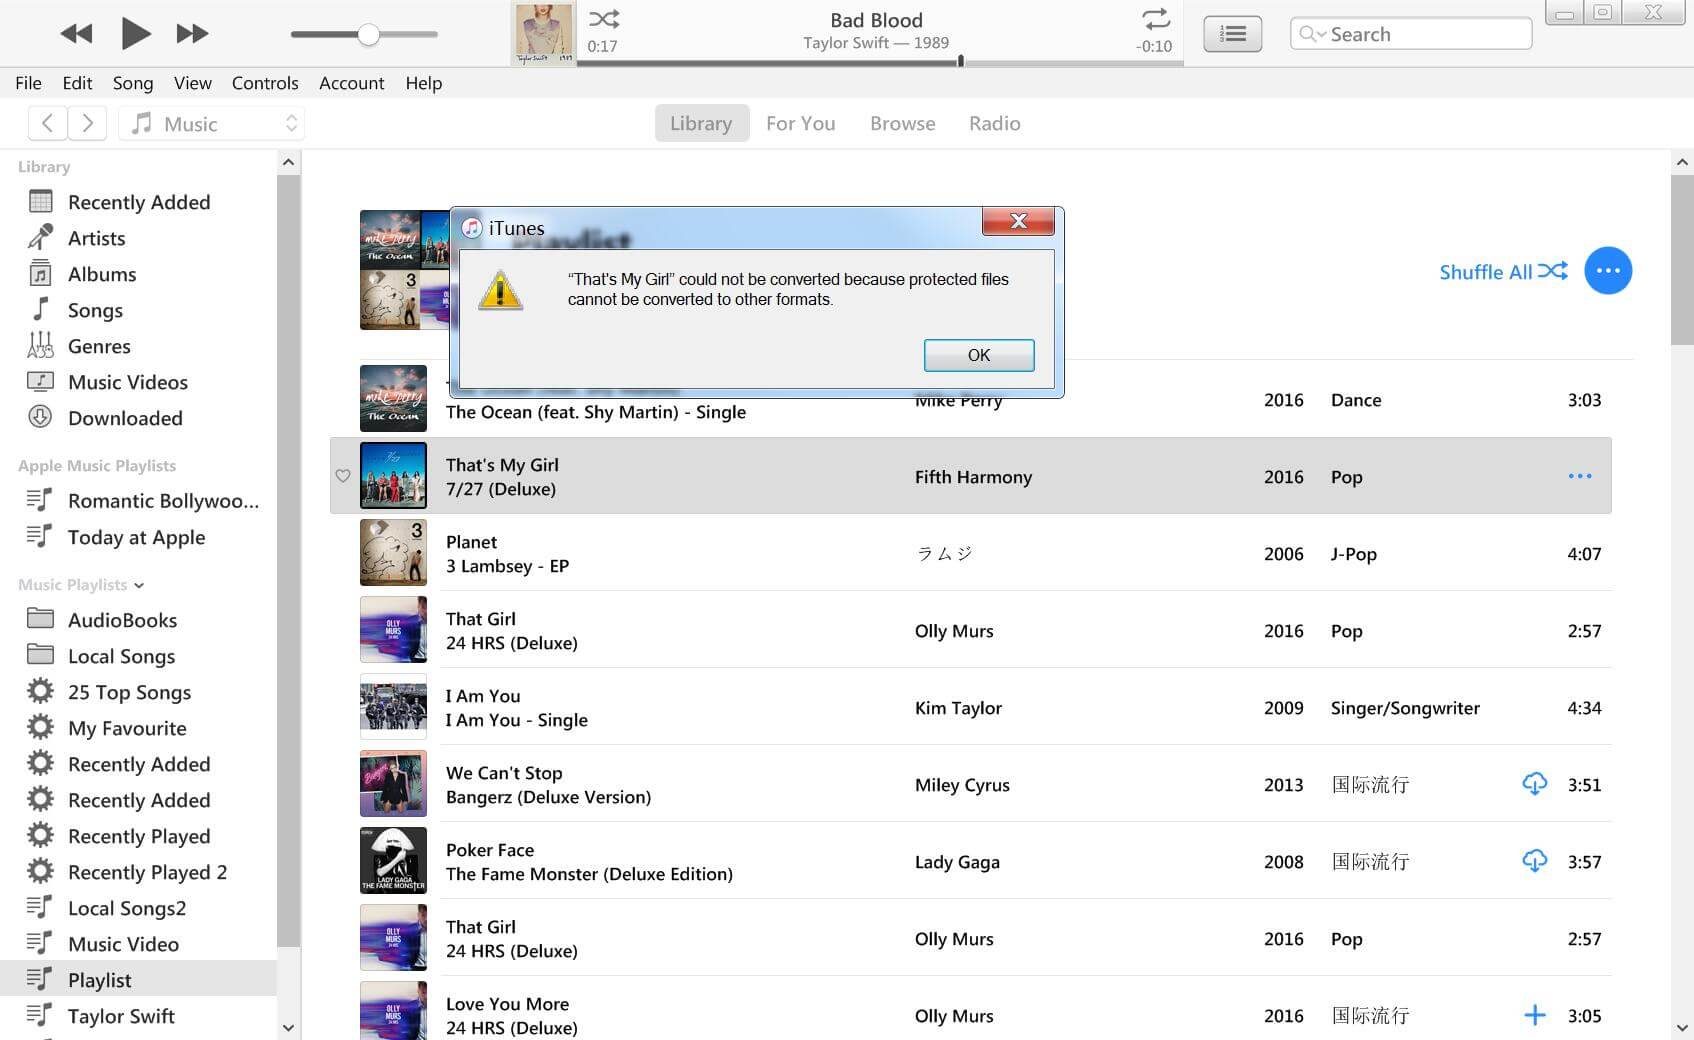 arquivos protegidos não podem ser convertidos com o iTunes